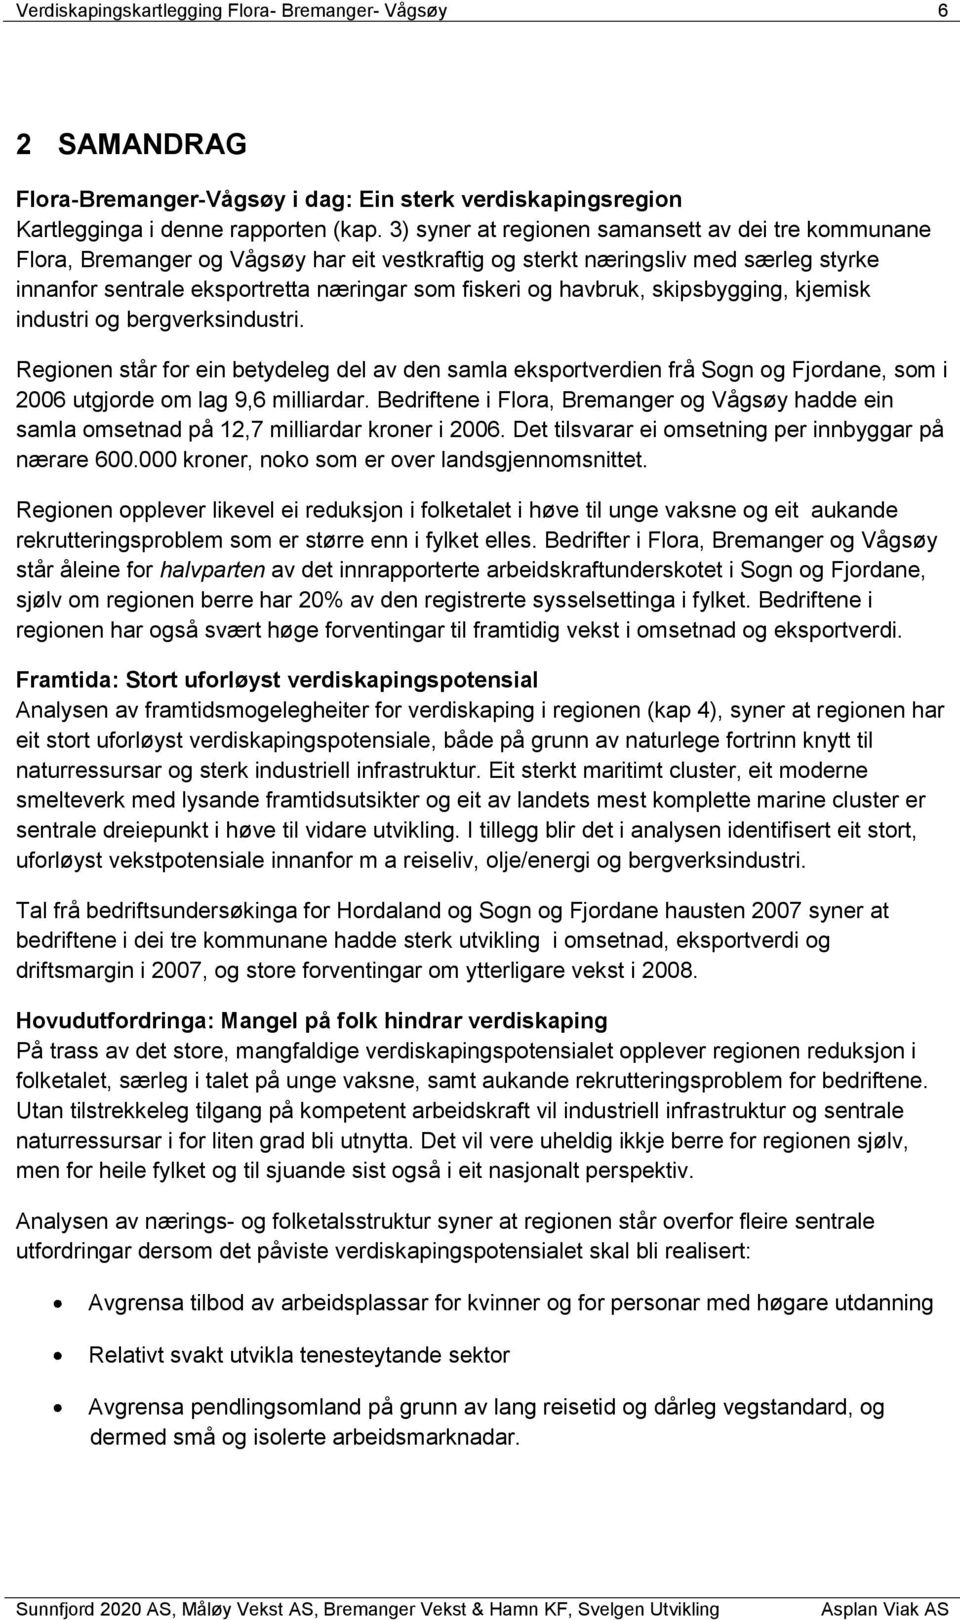 havbruk, skipsbygging, kjemisk industri og bergverksindustri. Regionen står for ein betydeleg del av den samla eksportverdien frå Sogn og Fjordane, som i 2006 utgjorde om lag 9,6 milliardar.